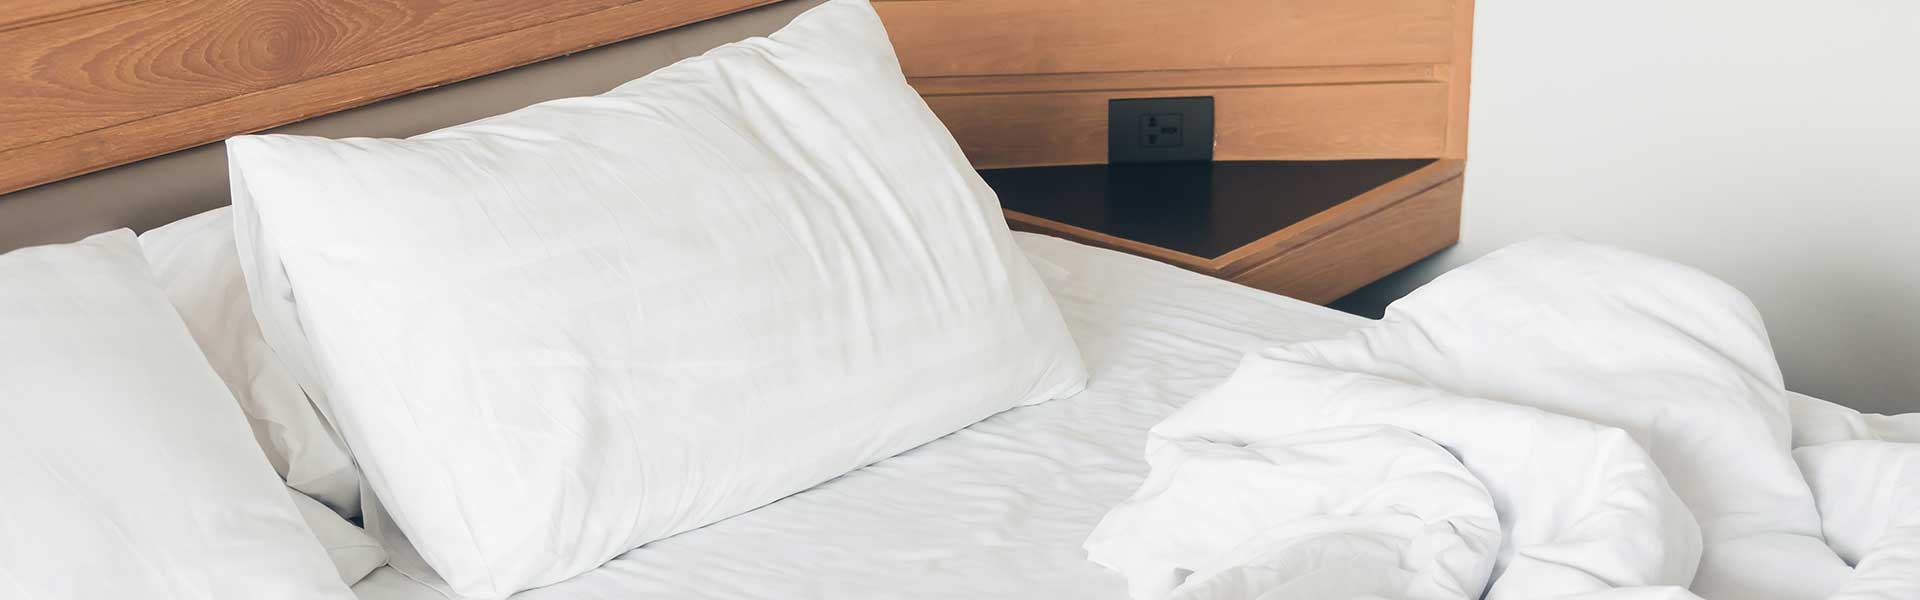 ¿Por qué las fundas de almohadas son clave en la hotelería?